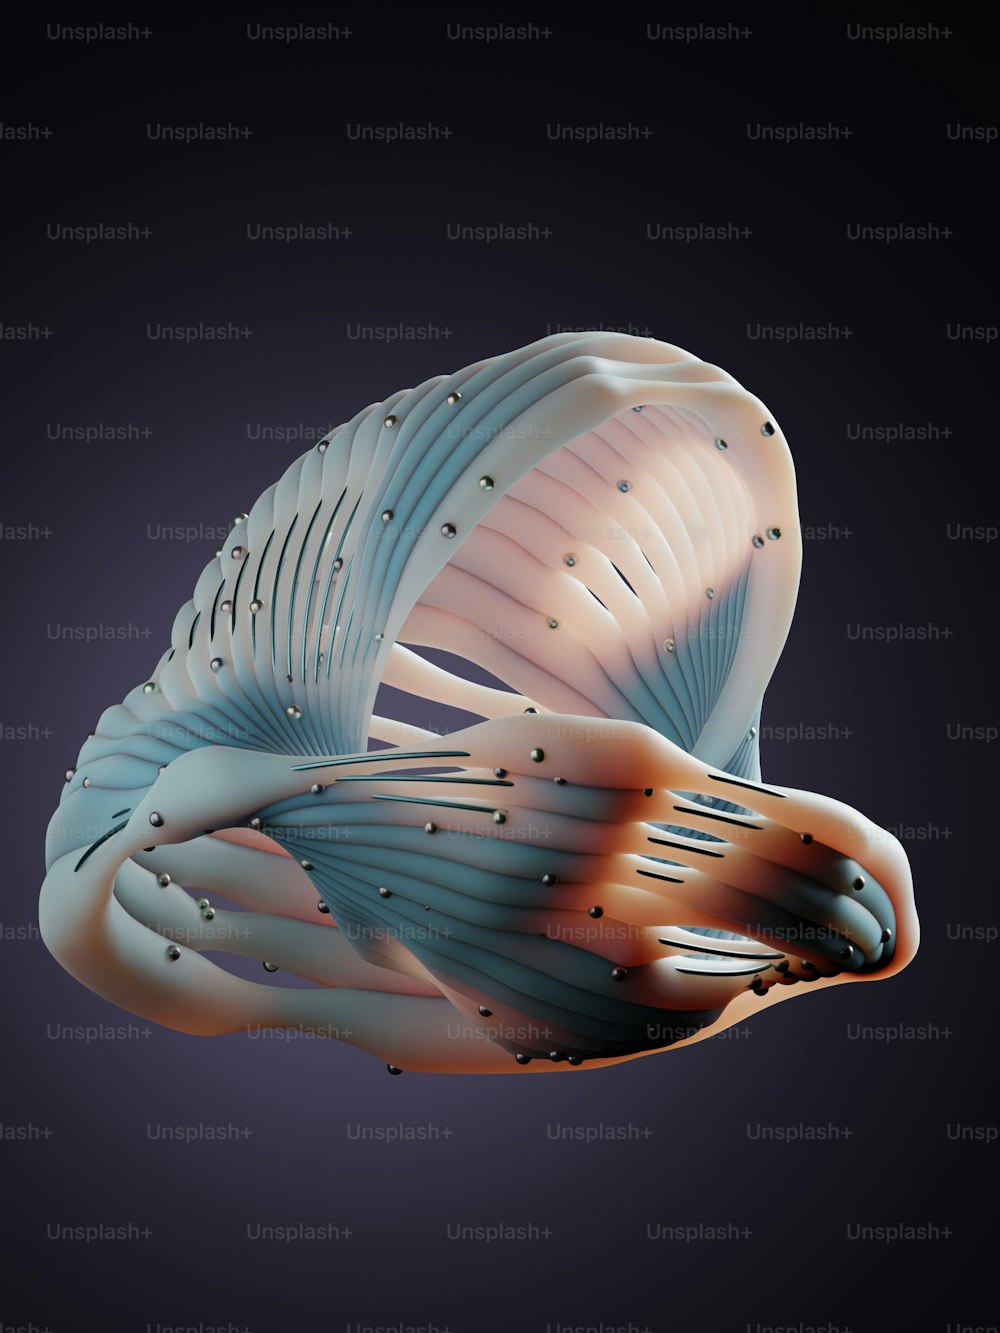 Ein 3D-Bild eines Vogels, der durch die Luft fliegt